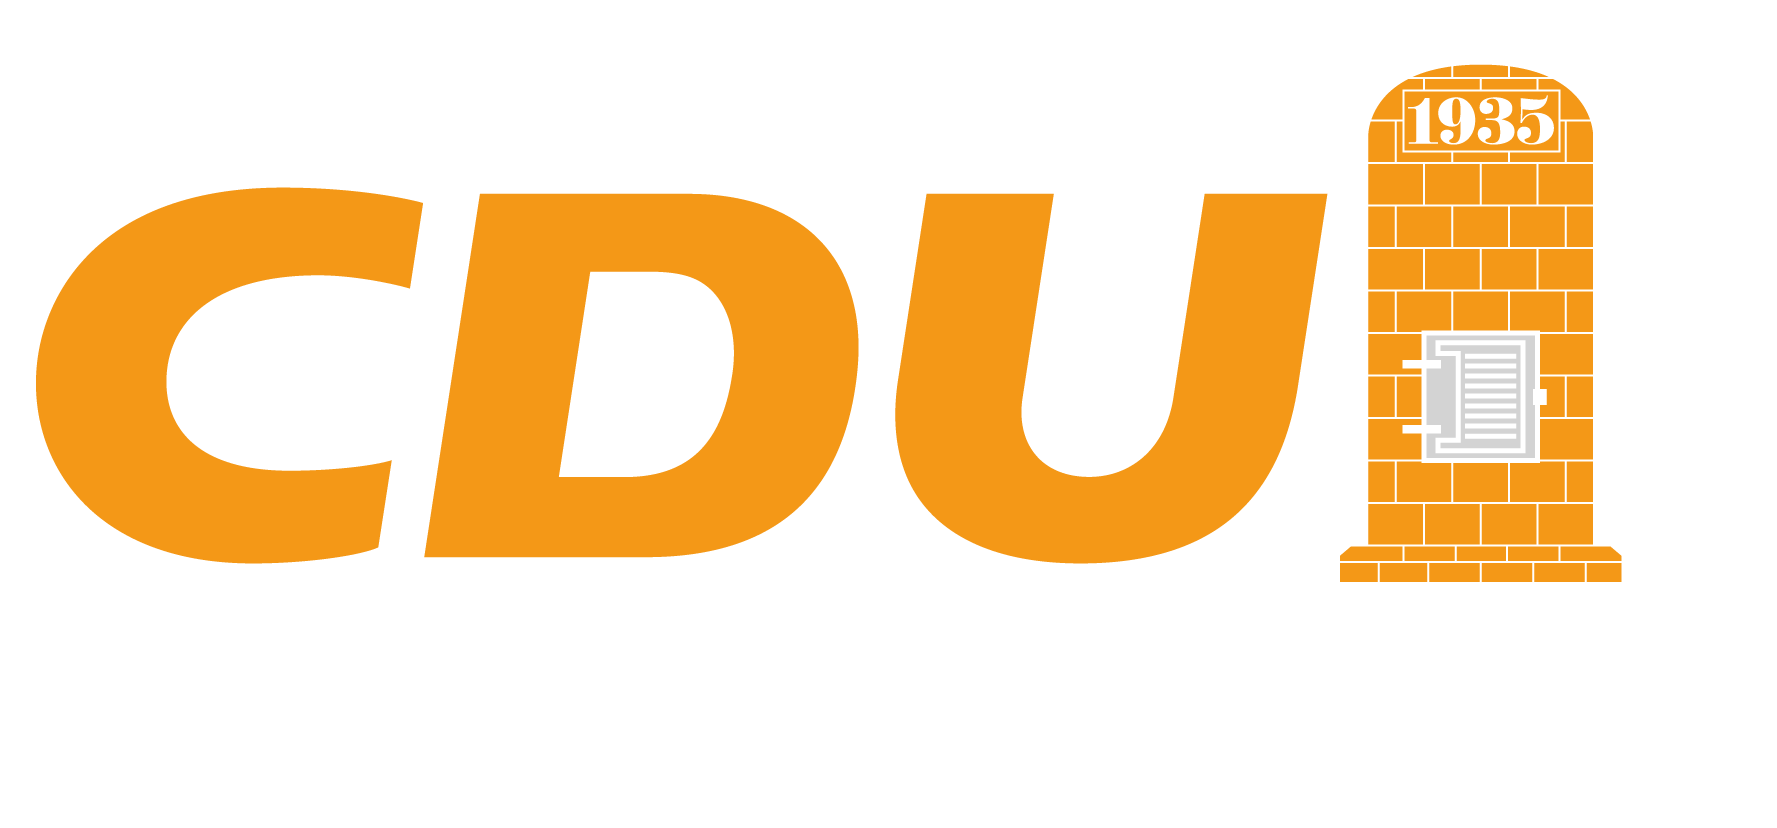 CDU | Stadtverband Velten